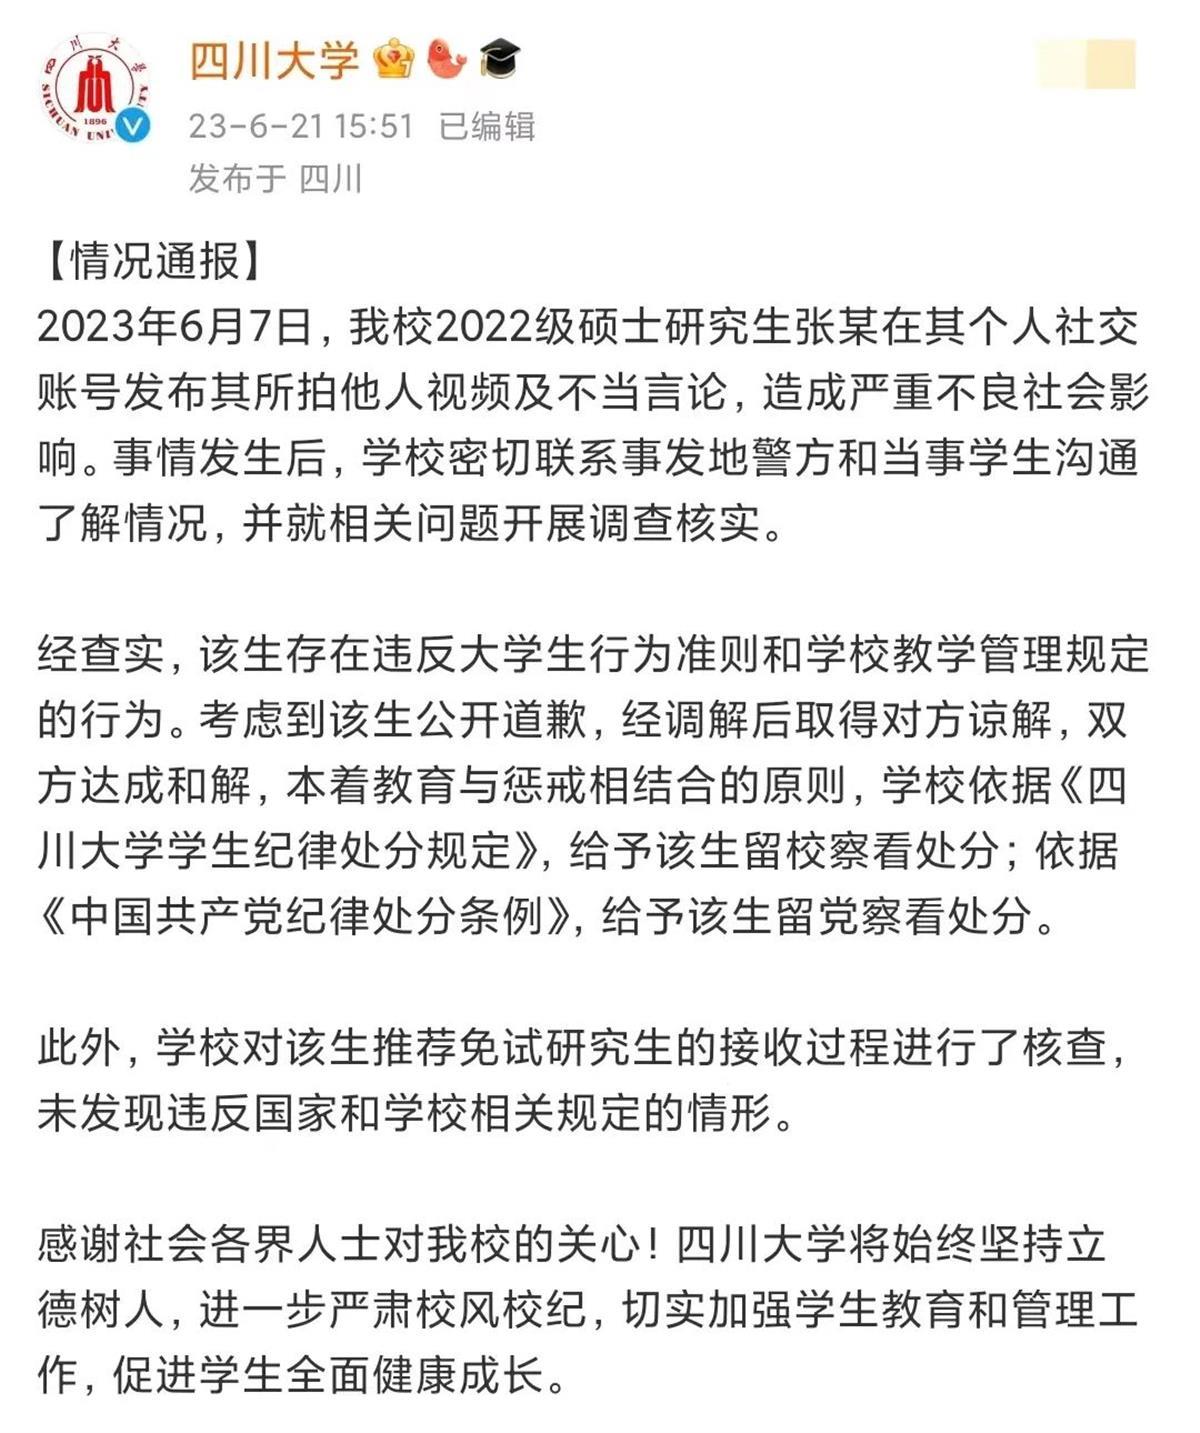 北京一律所发文拒聘川大毕业生，负责人回应称并非就业歧视，第三方律师：知法犯法2